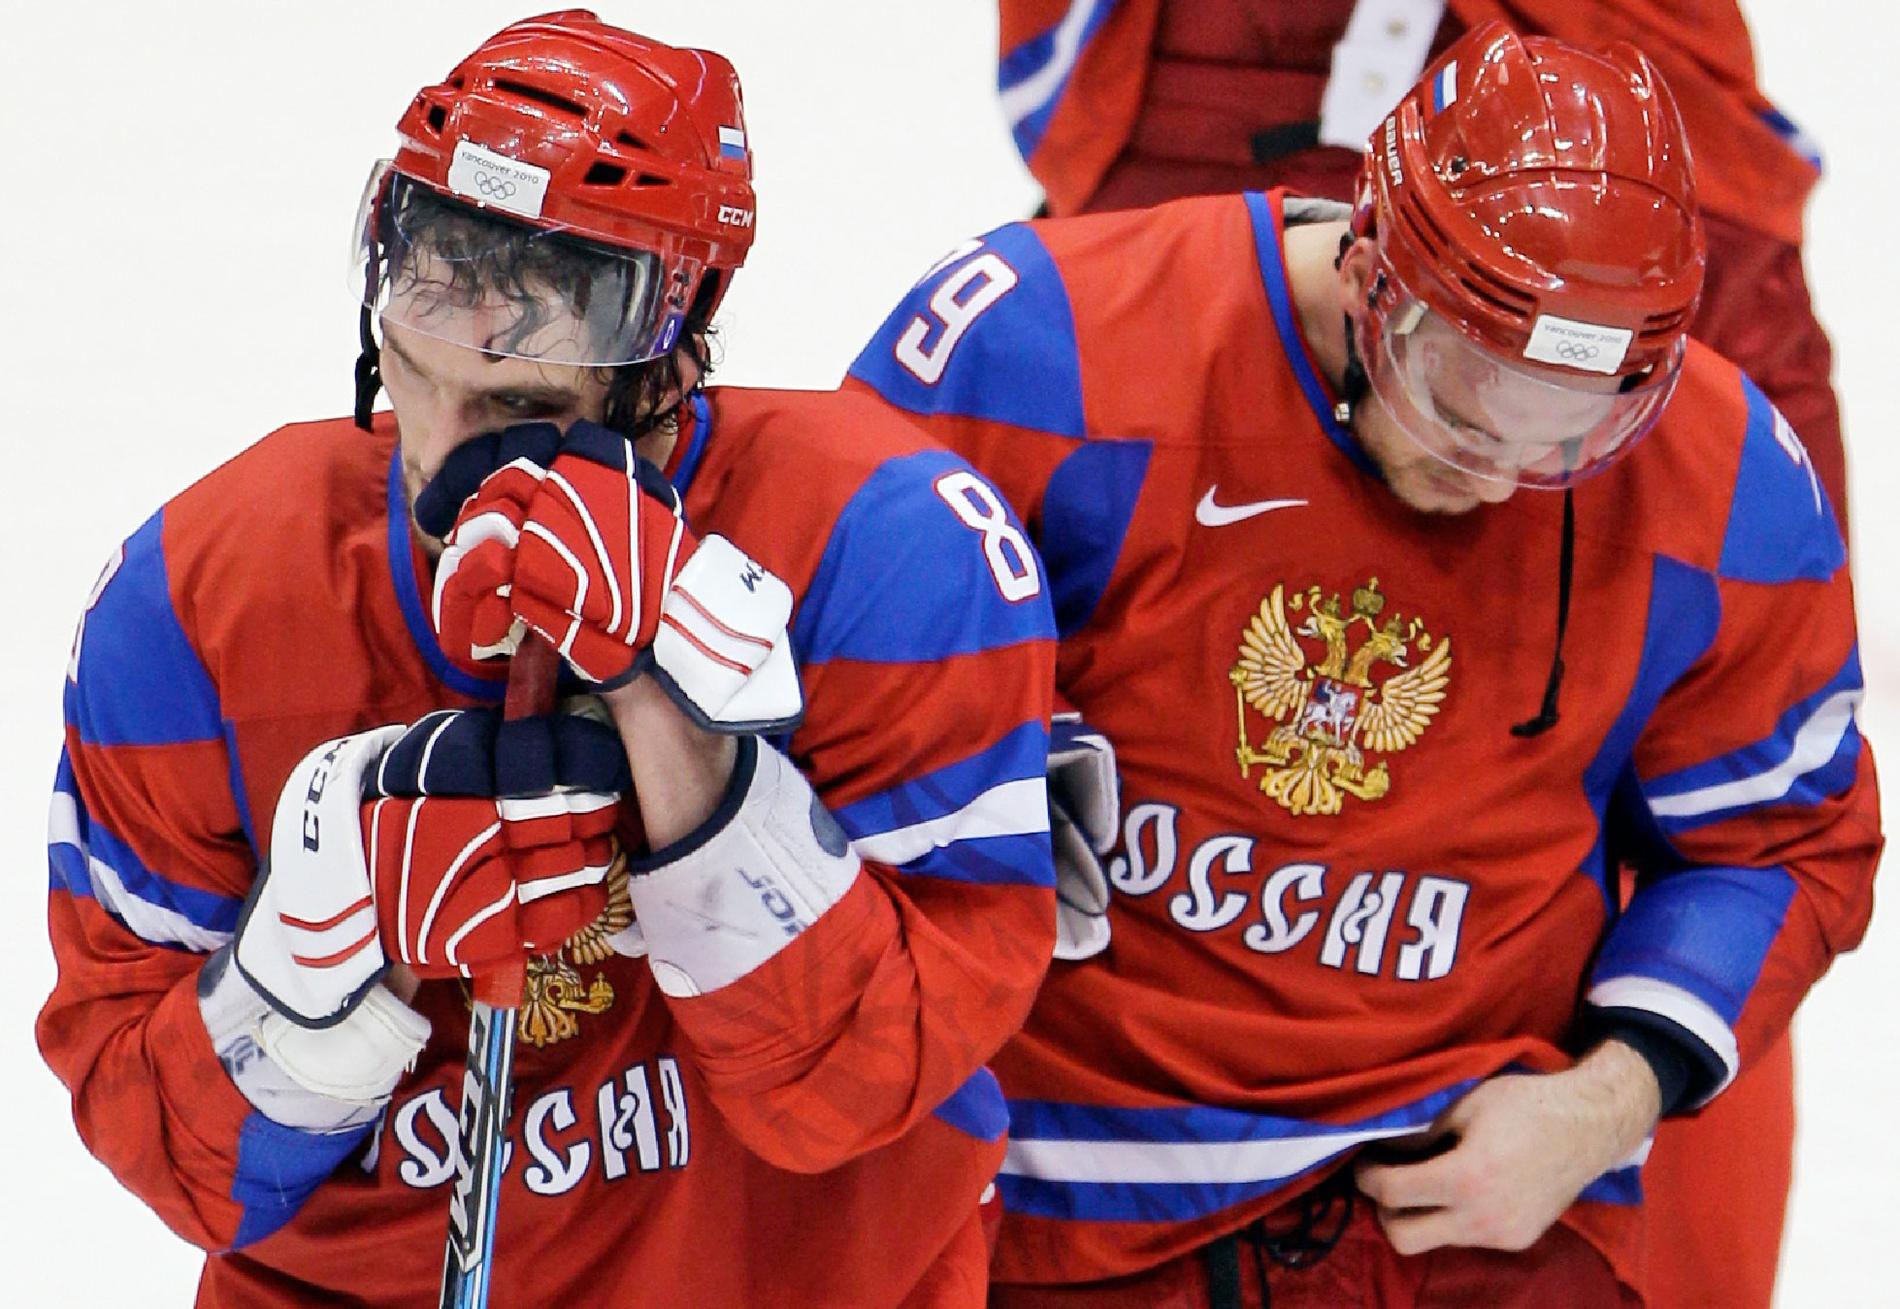 Ishockey var en av idrotterna där Ryssland inte lyckades så bra som de hade hoppats i OS.